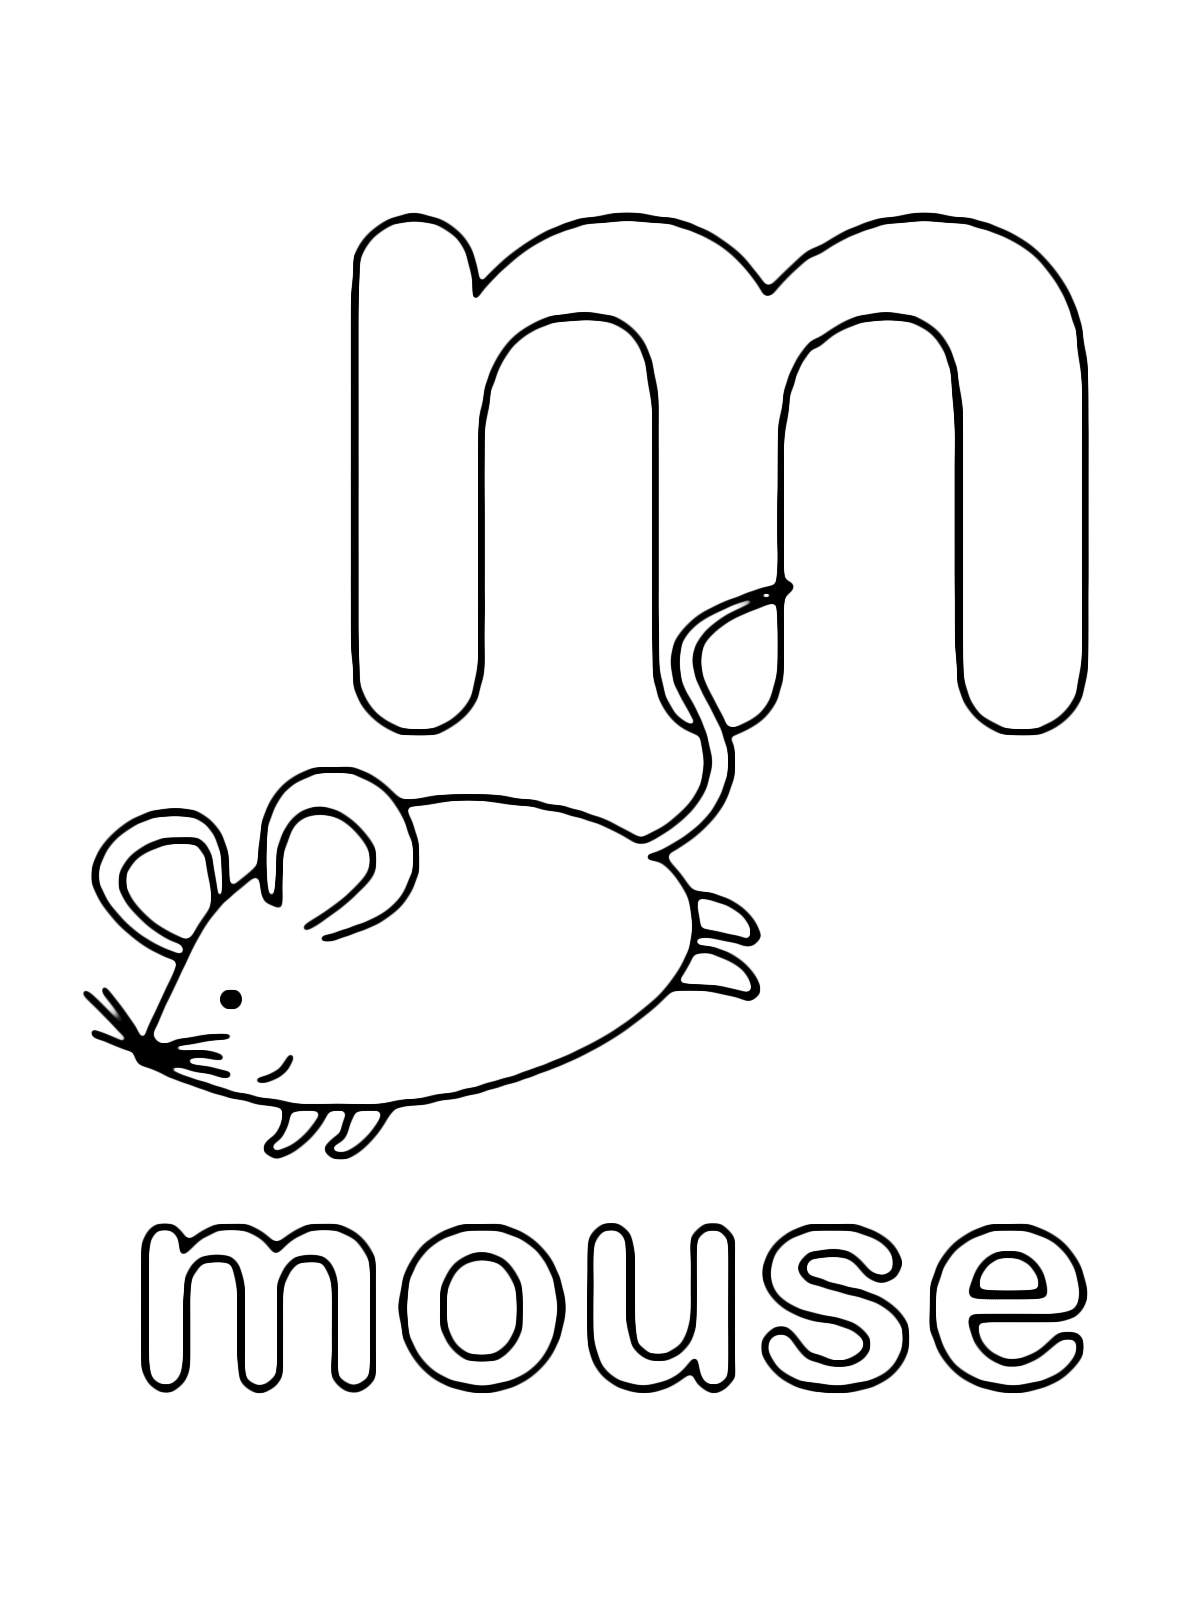 Lettere e numeri - Lettera m in stampato minuscolo di mouse (topo) in Inglese